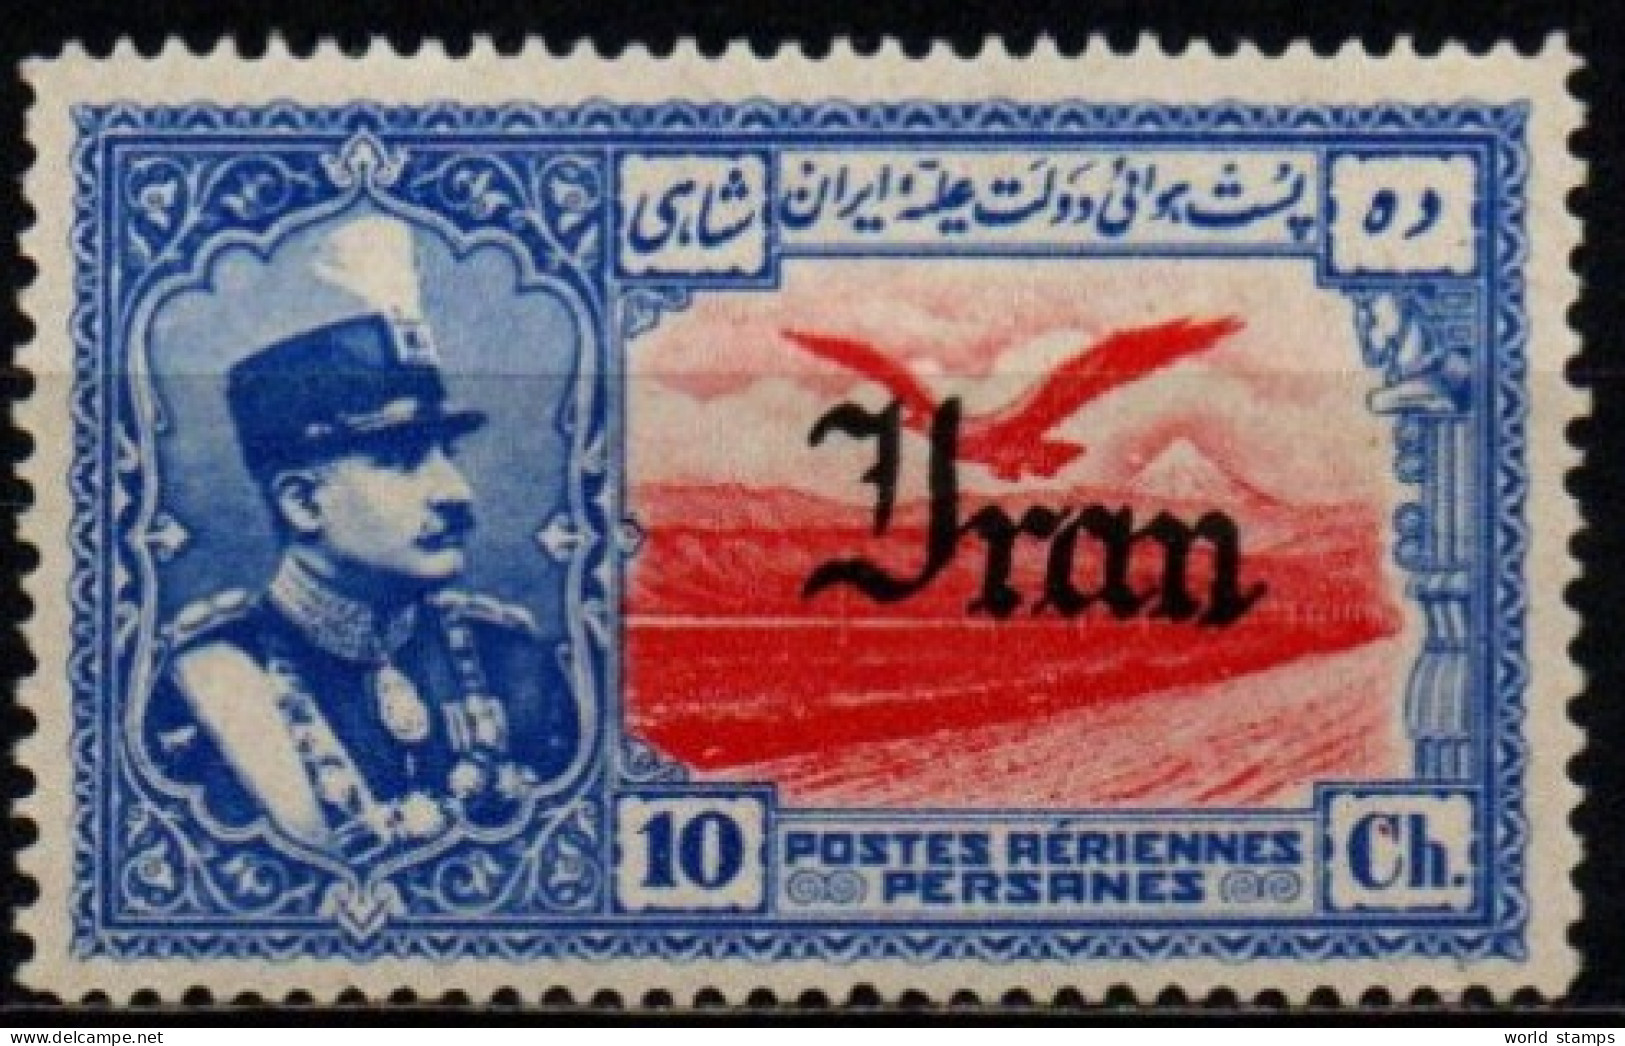 IRAN 1935 * - Iran